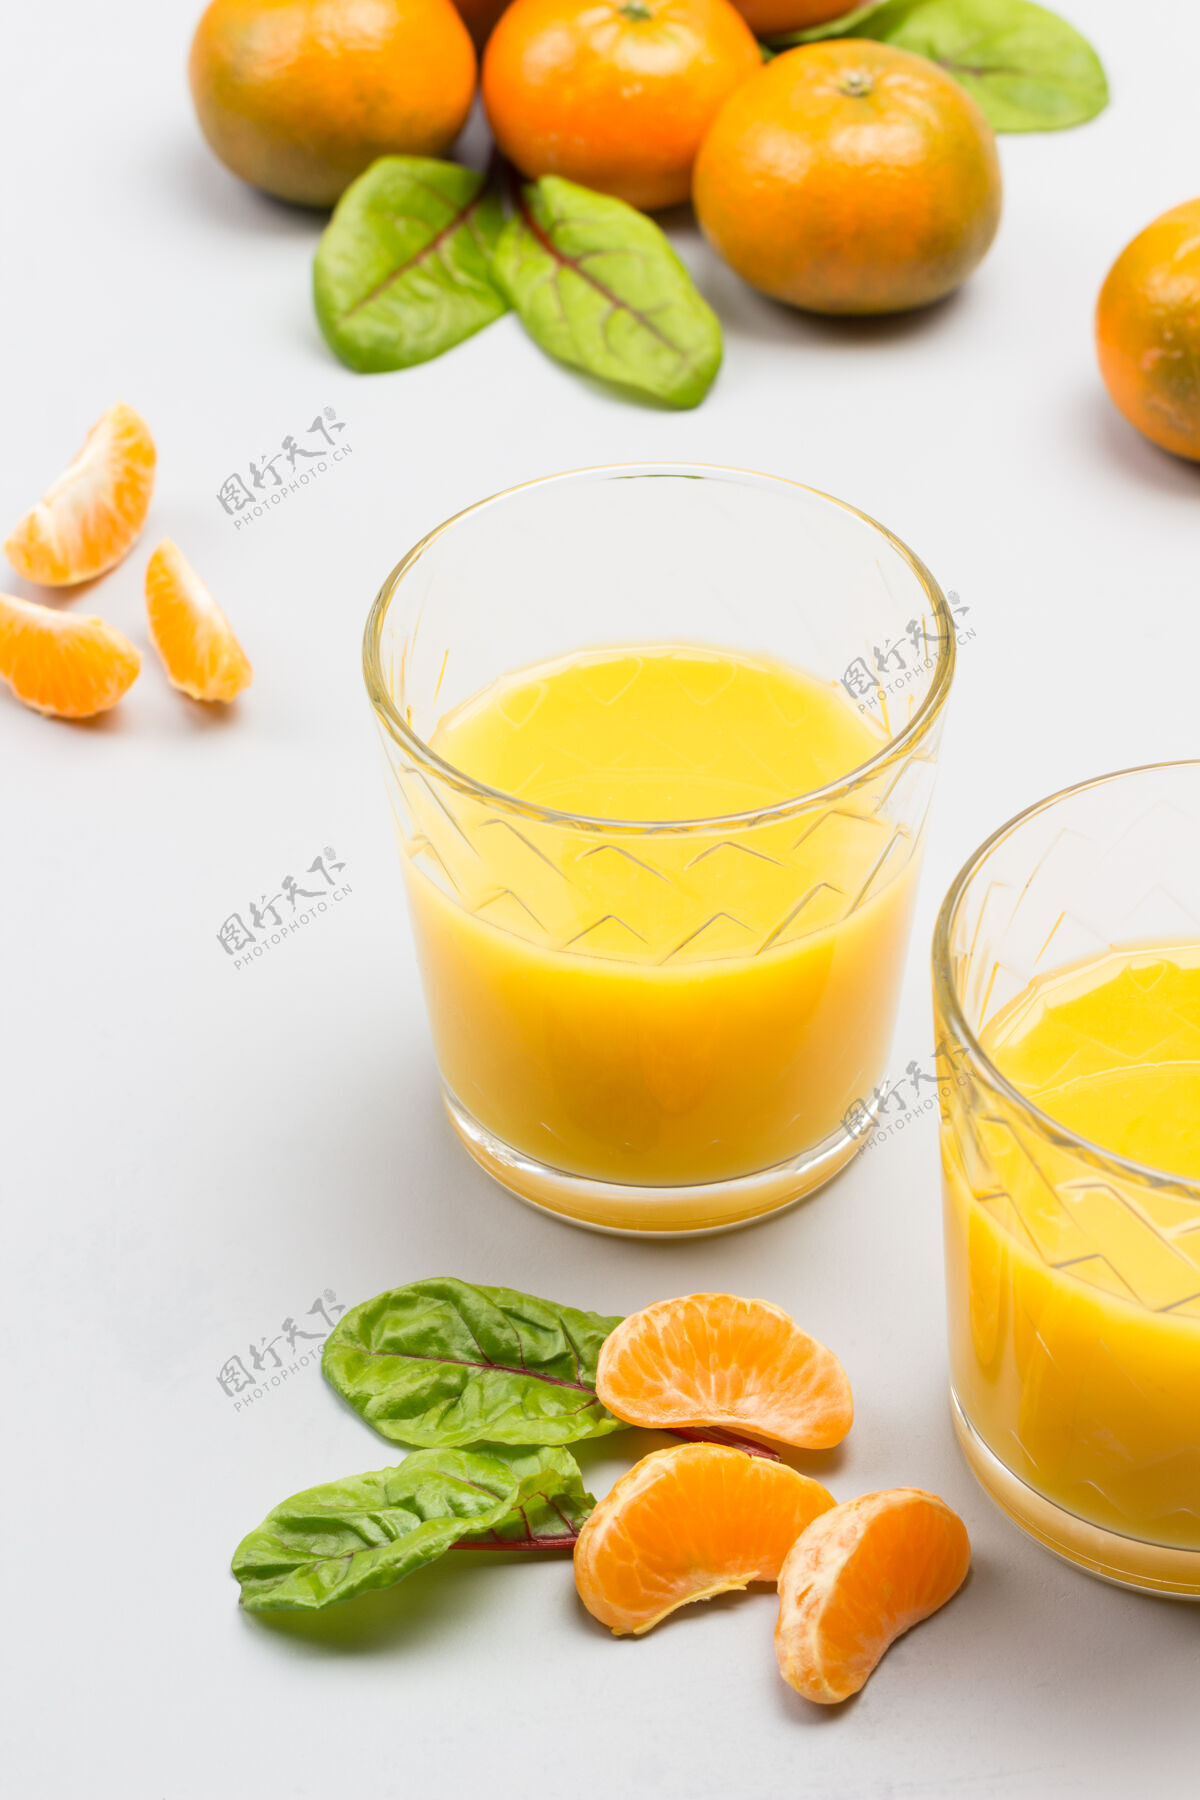 排毒柑橘果汁眼镜橘子桌上有叶子的切片免疫力甜食物